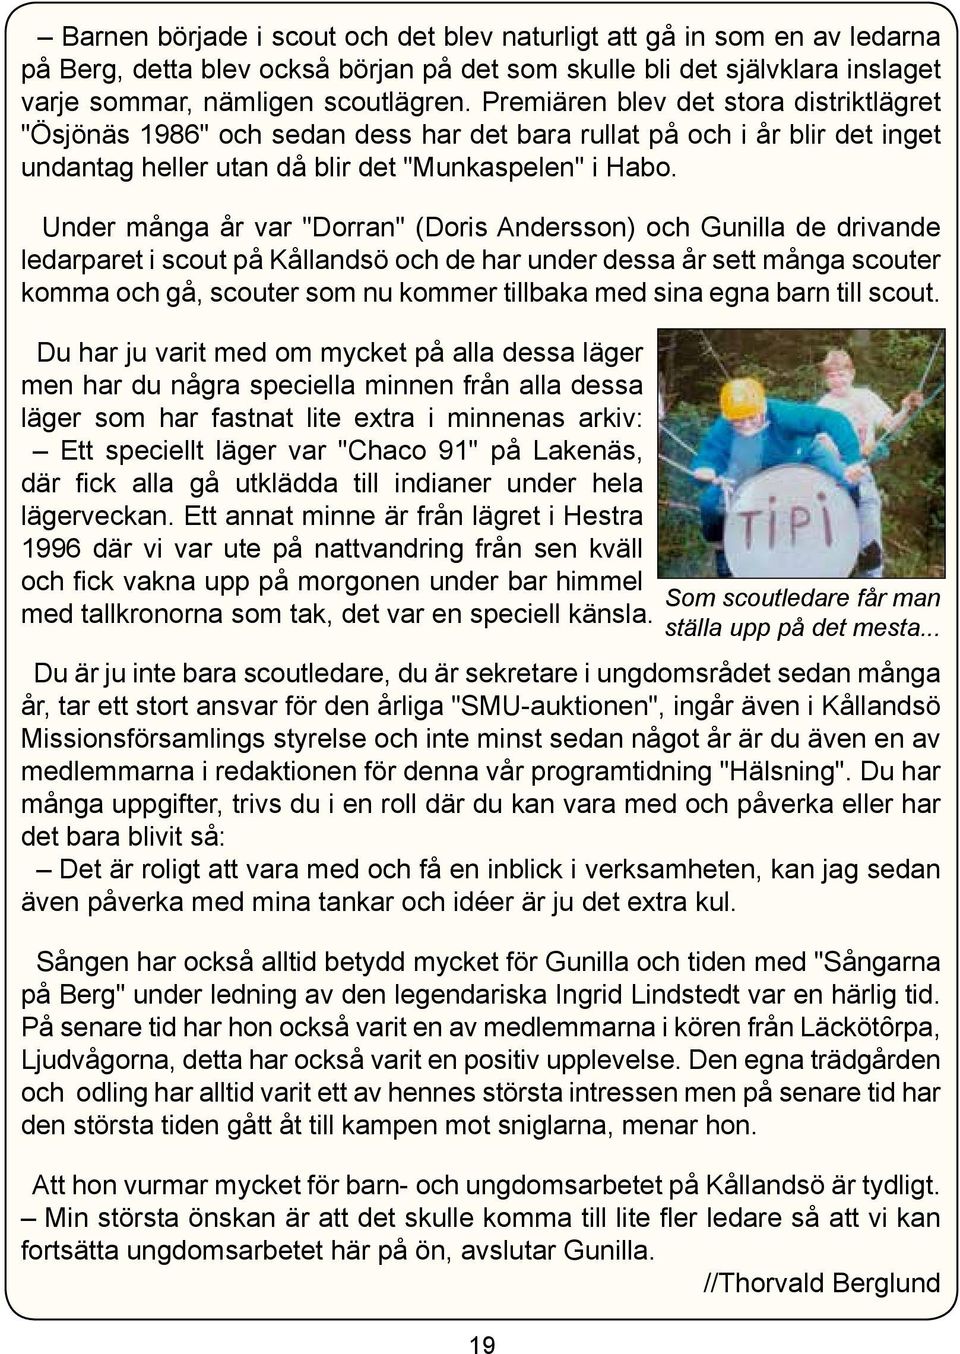 Under många år var "Dorran" (Doris Andersson) och Gunilla de drivande ledarparet i scout på Kållandsö och de har under dessa år sett många scouter komma och gå, scouter som nu kommer tillbaka med